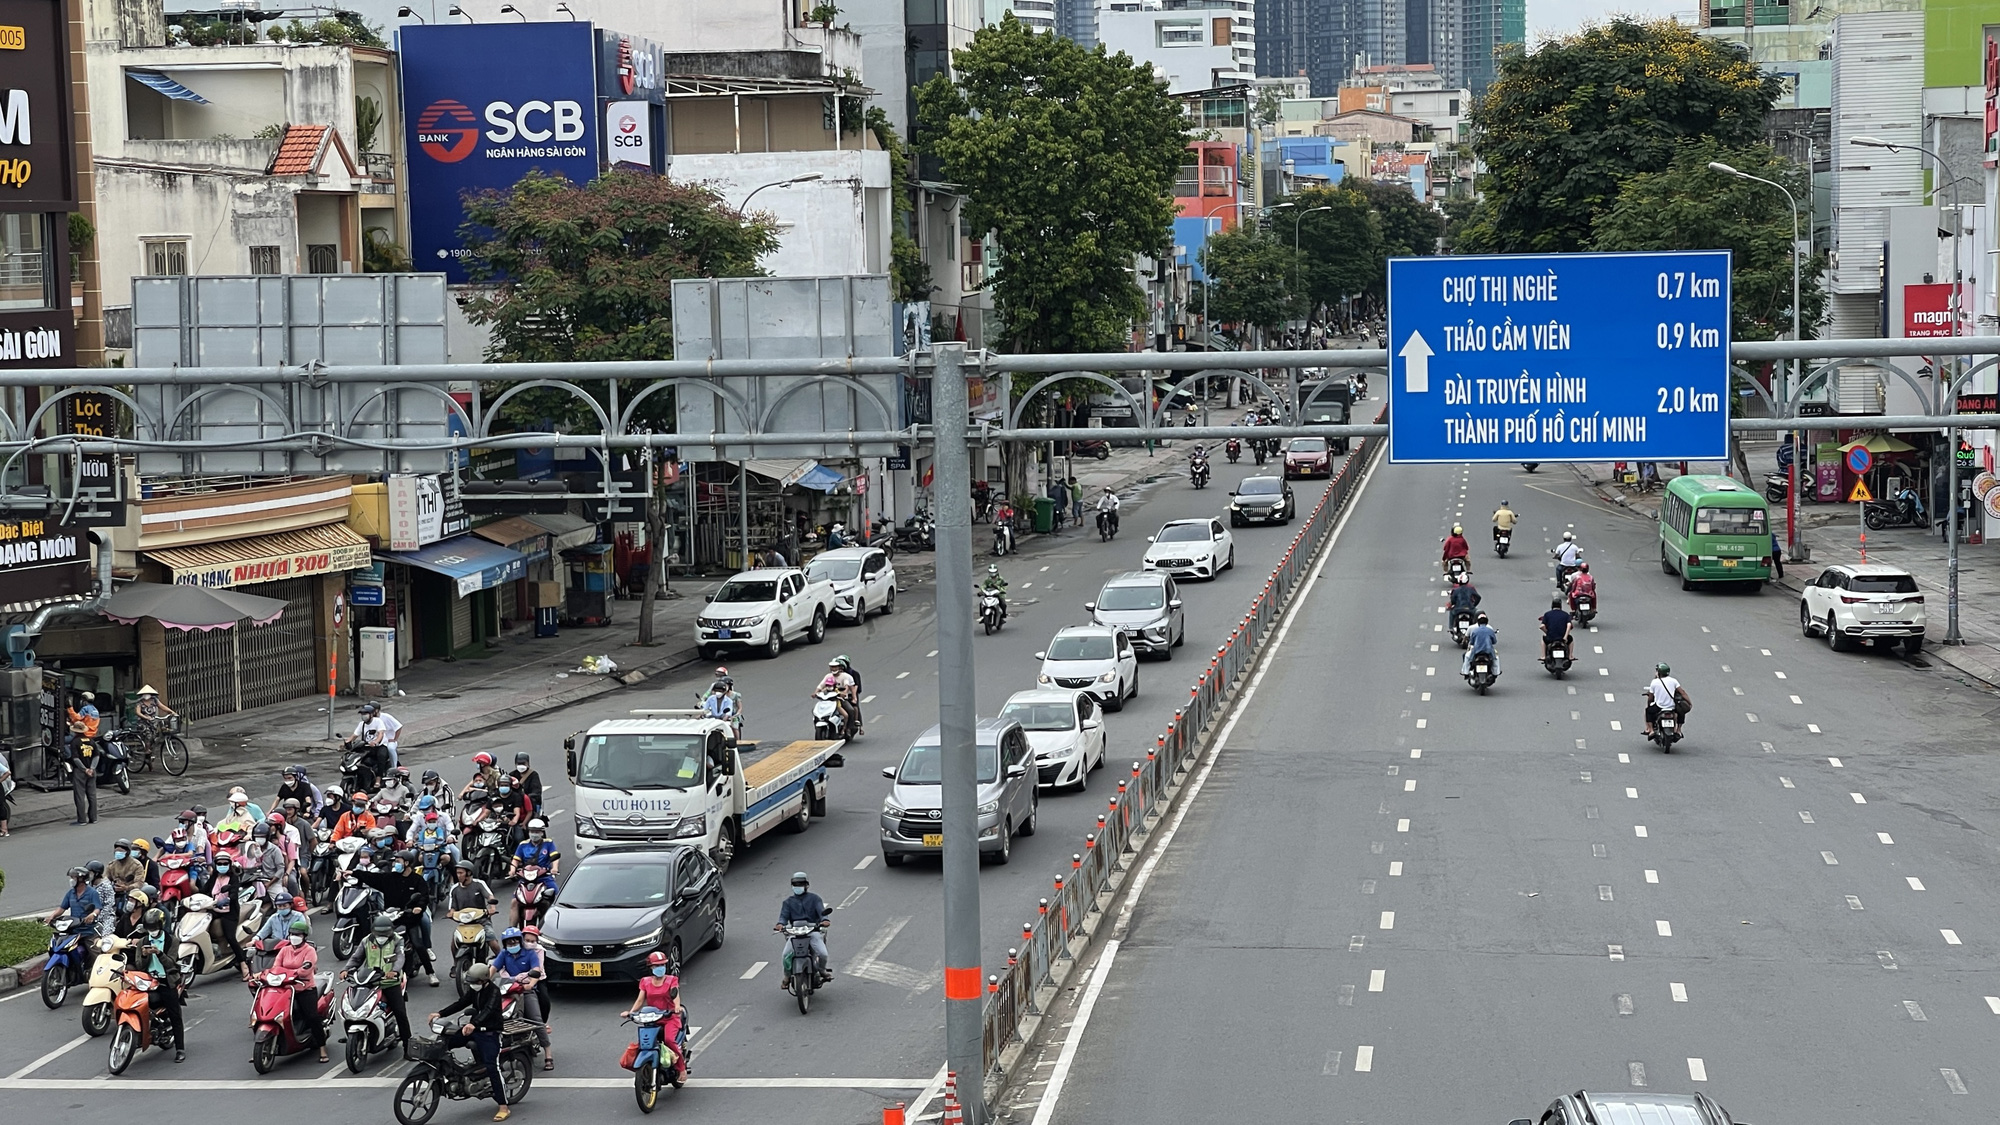 Hình ảnh giao thông cửa ngõ phía Đông TP HCM ngày 1-5 - Báo Người lao động